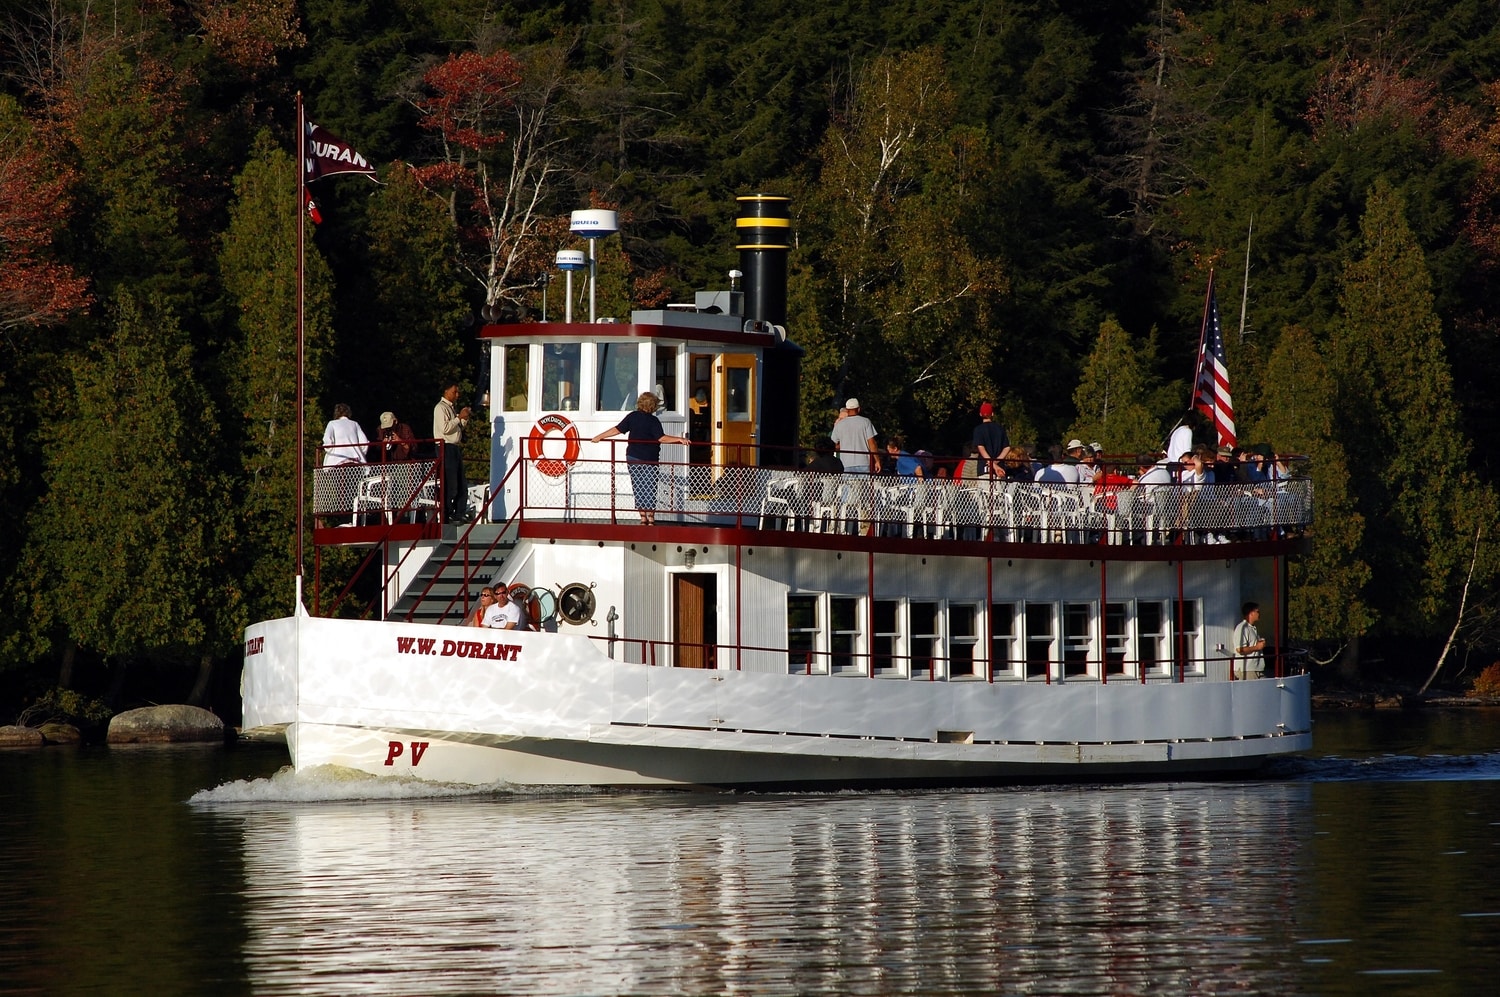 W.W Durant boat tour on Raquette Lake